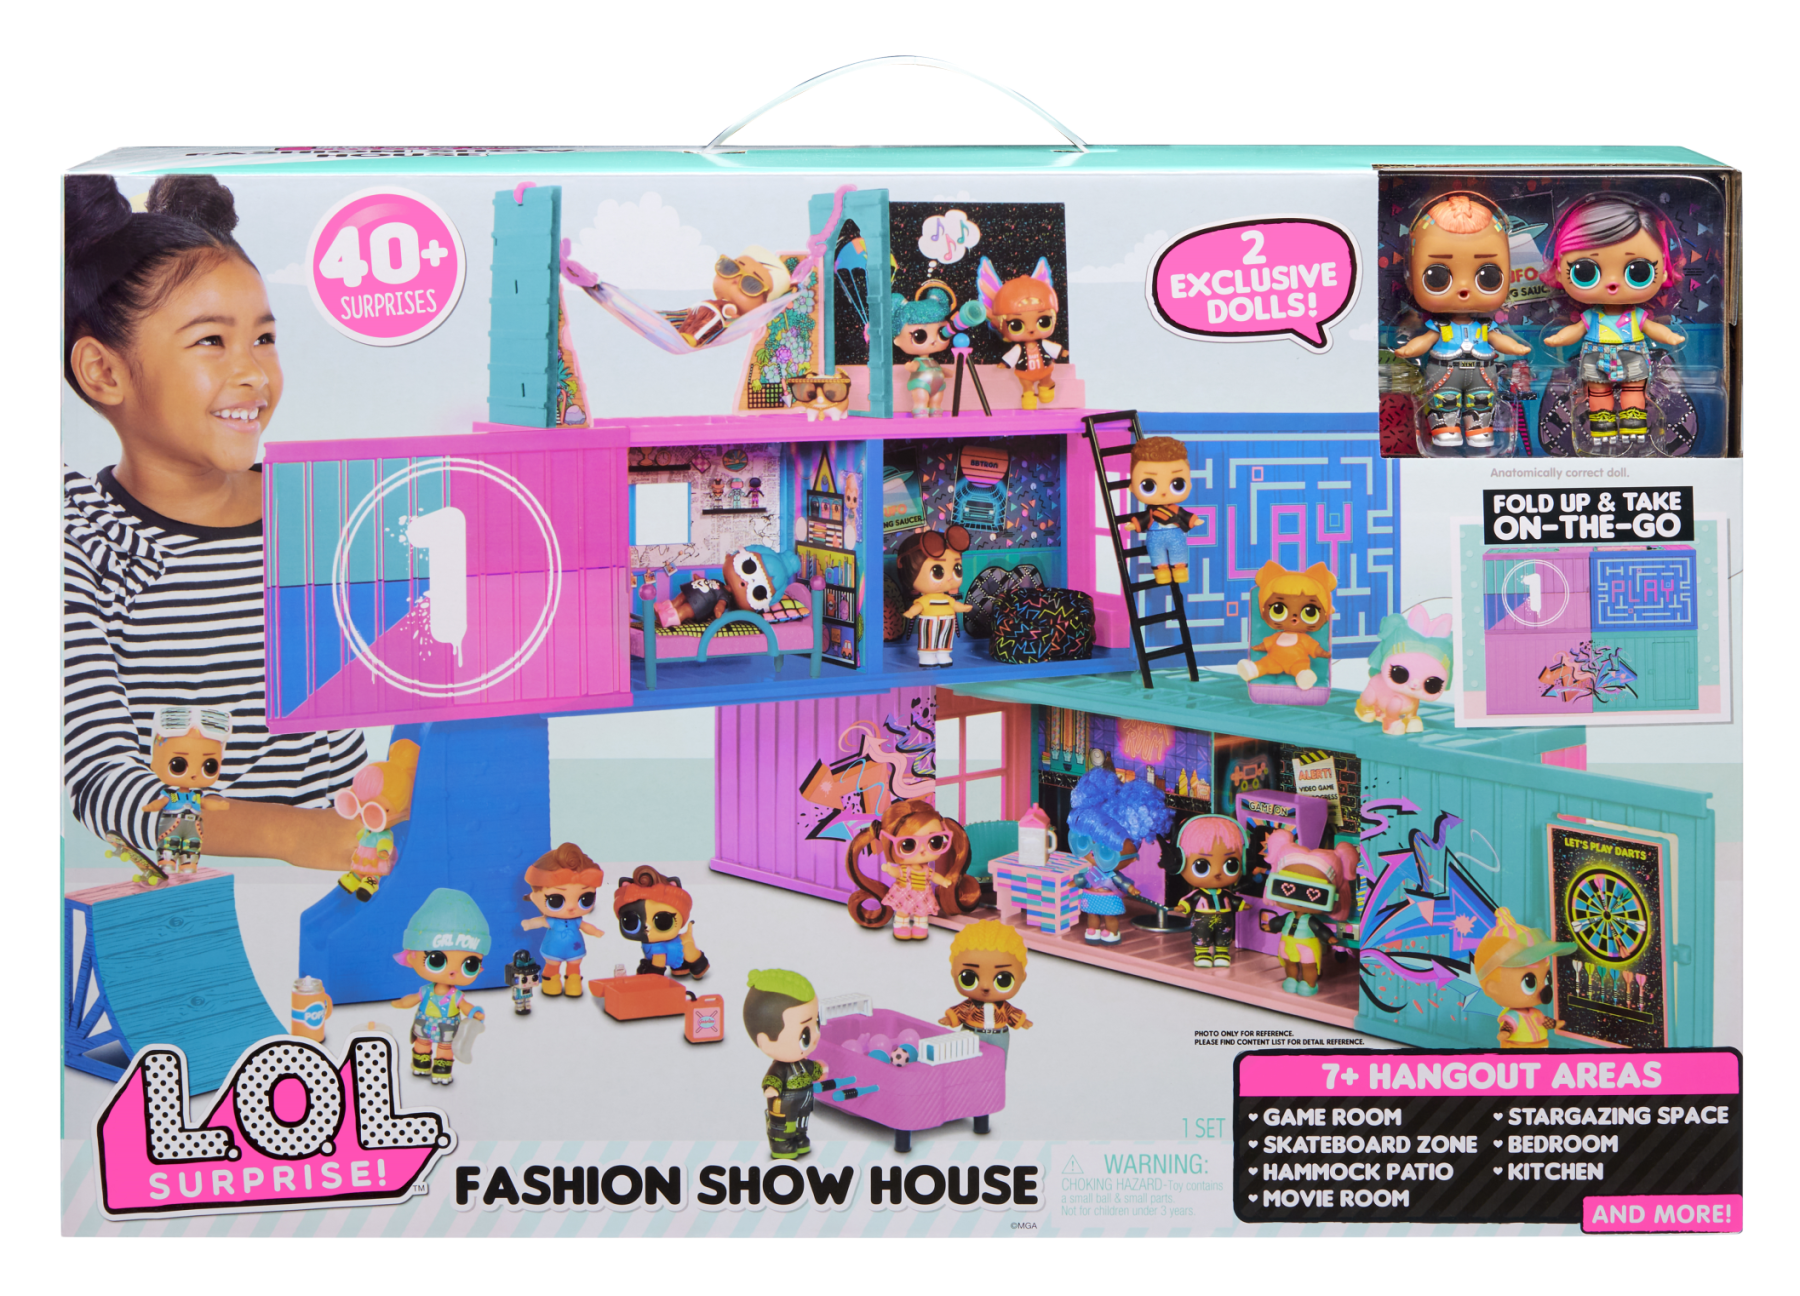 L.o.l. surprise! fashion show casa delle bambole, 40+ sorprese da scoprire, include 2 bambole esclusive, mobili, accessori e molto altro - LOL